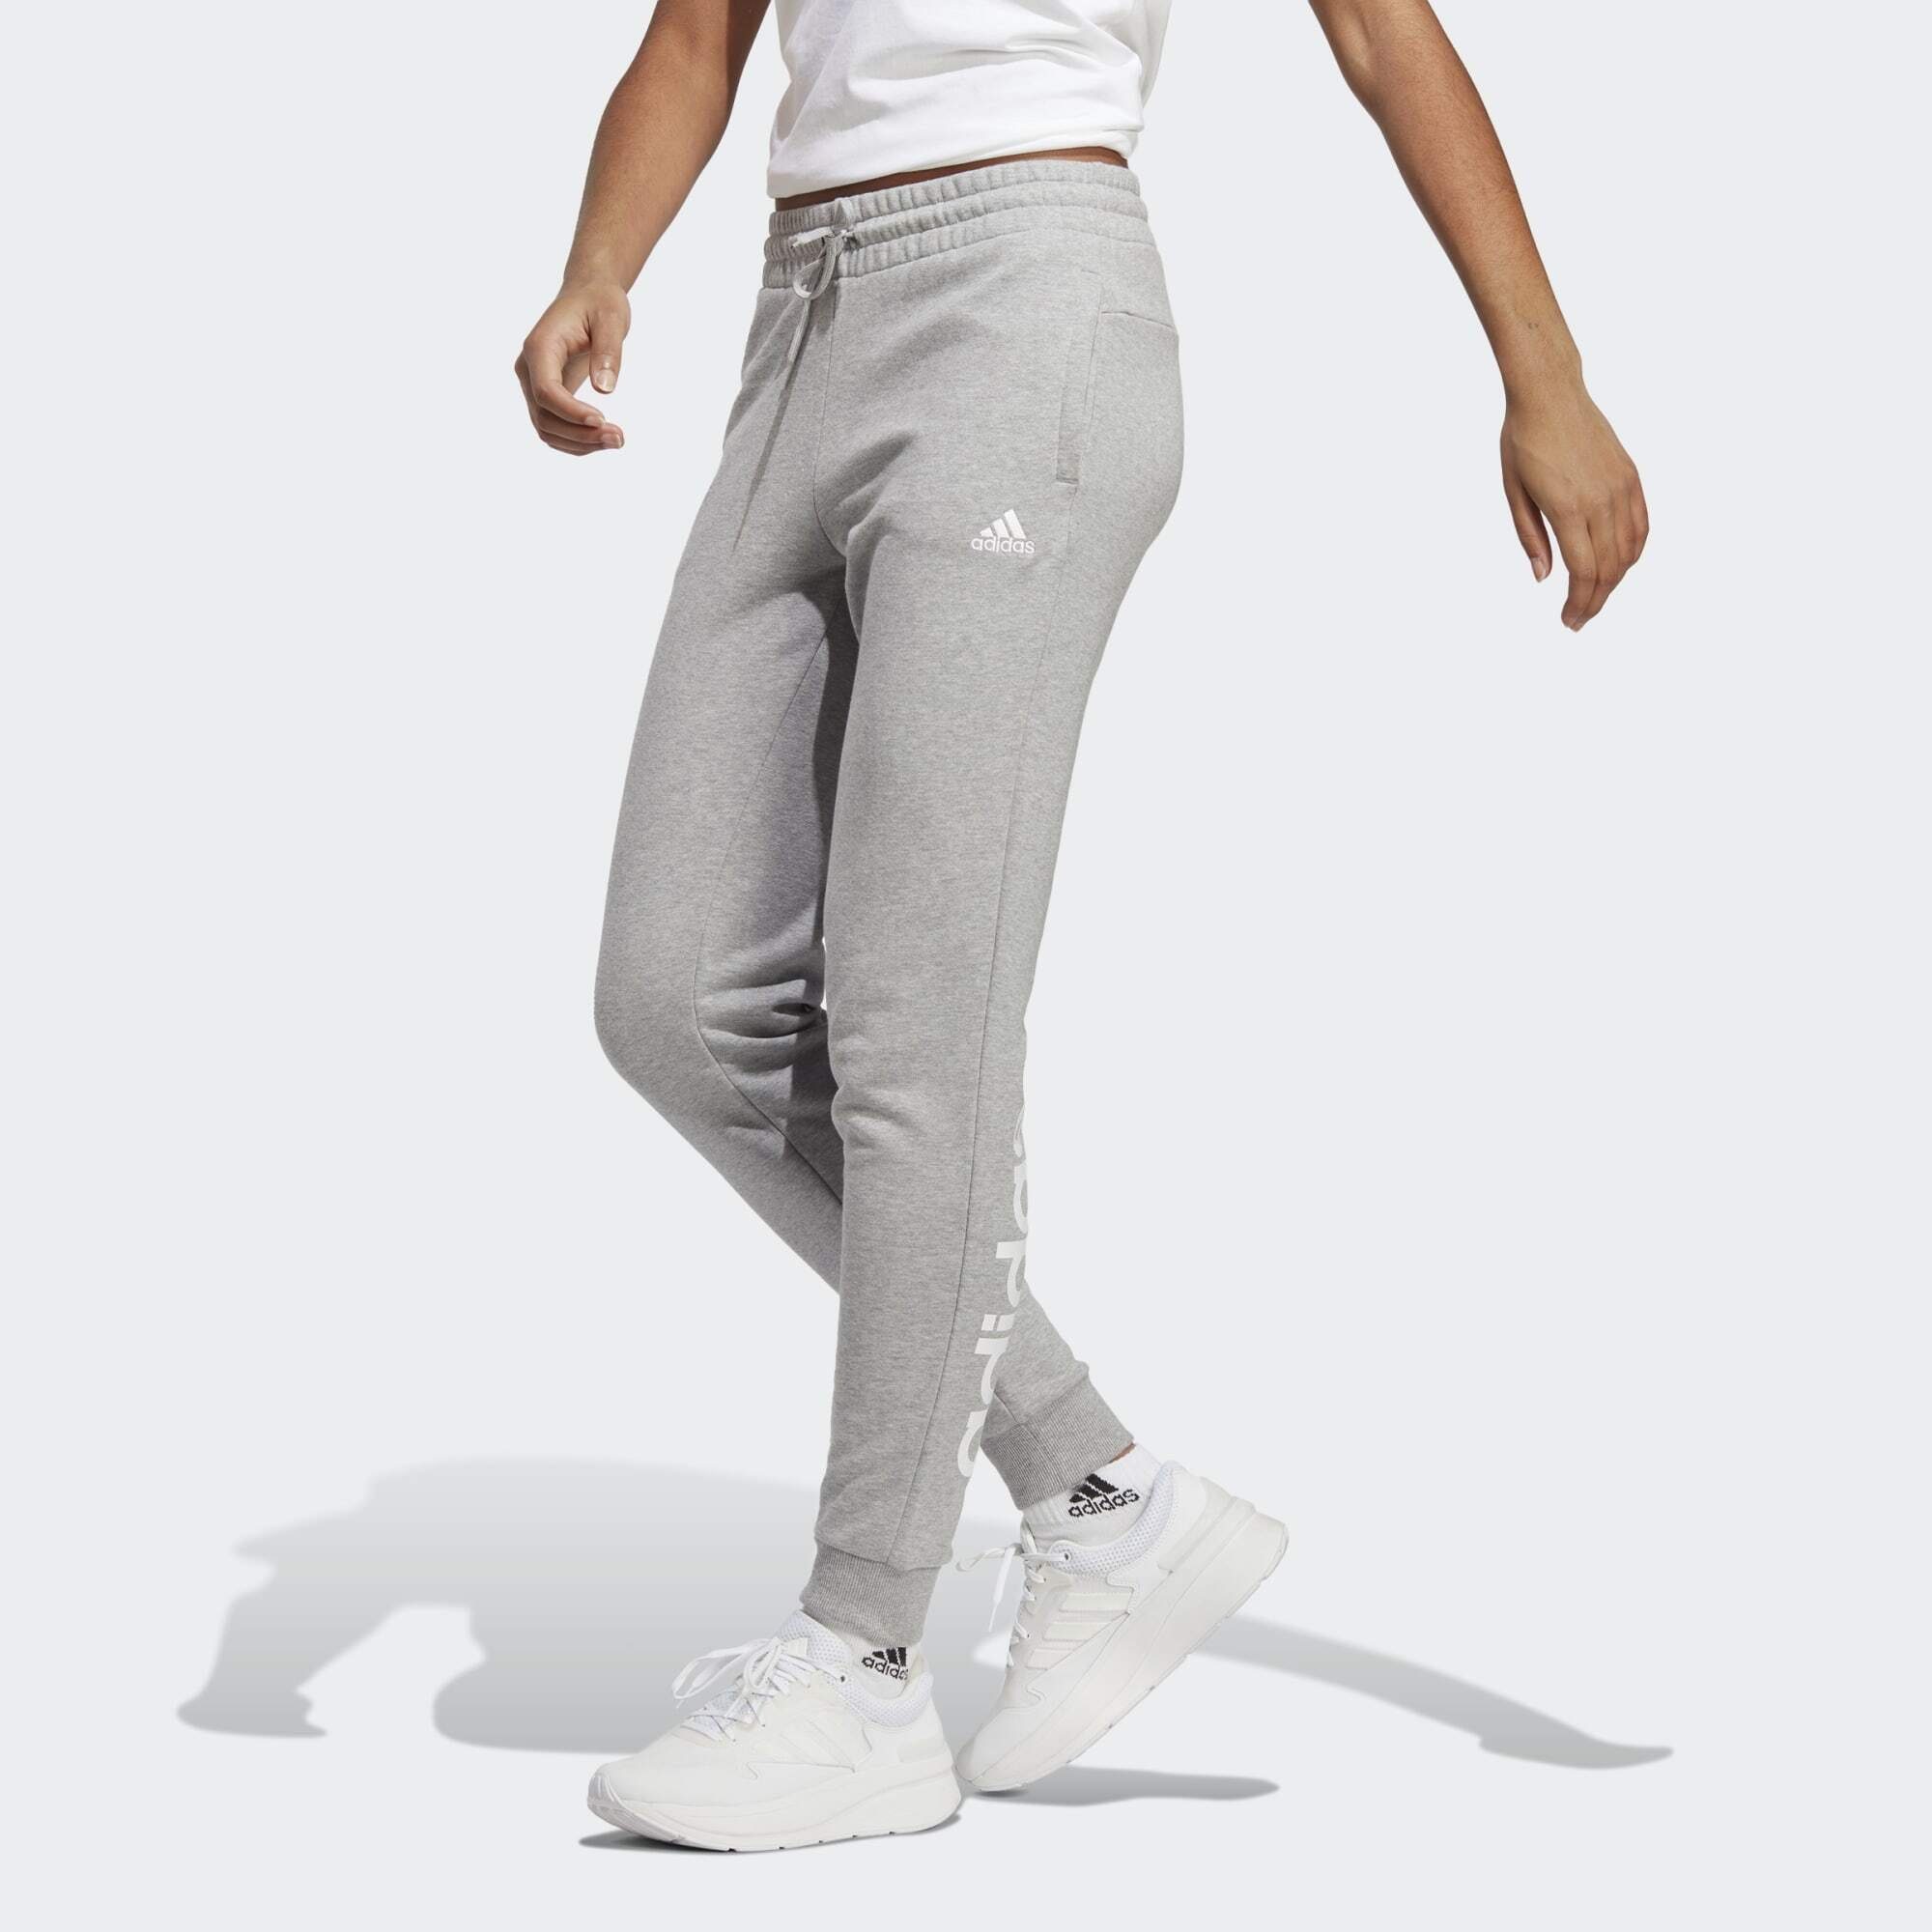 White Jogginghose Sportswear / ESSENTIALS Heather TERRY FRENCH HOSE LINEAR Medium CUFFED Grey adidas